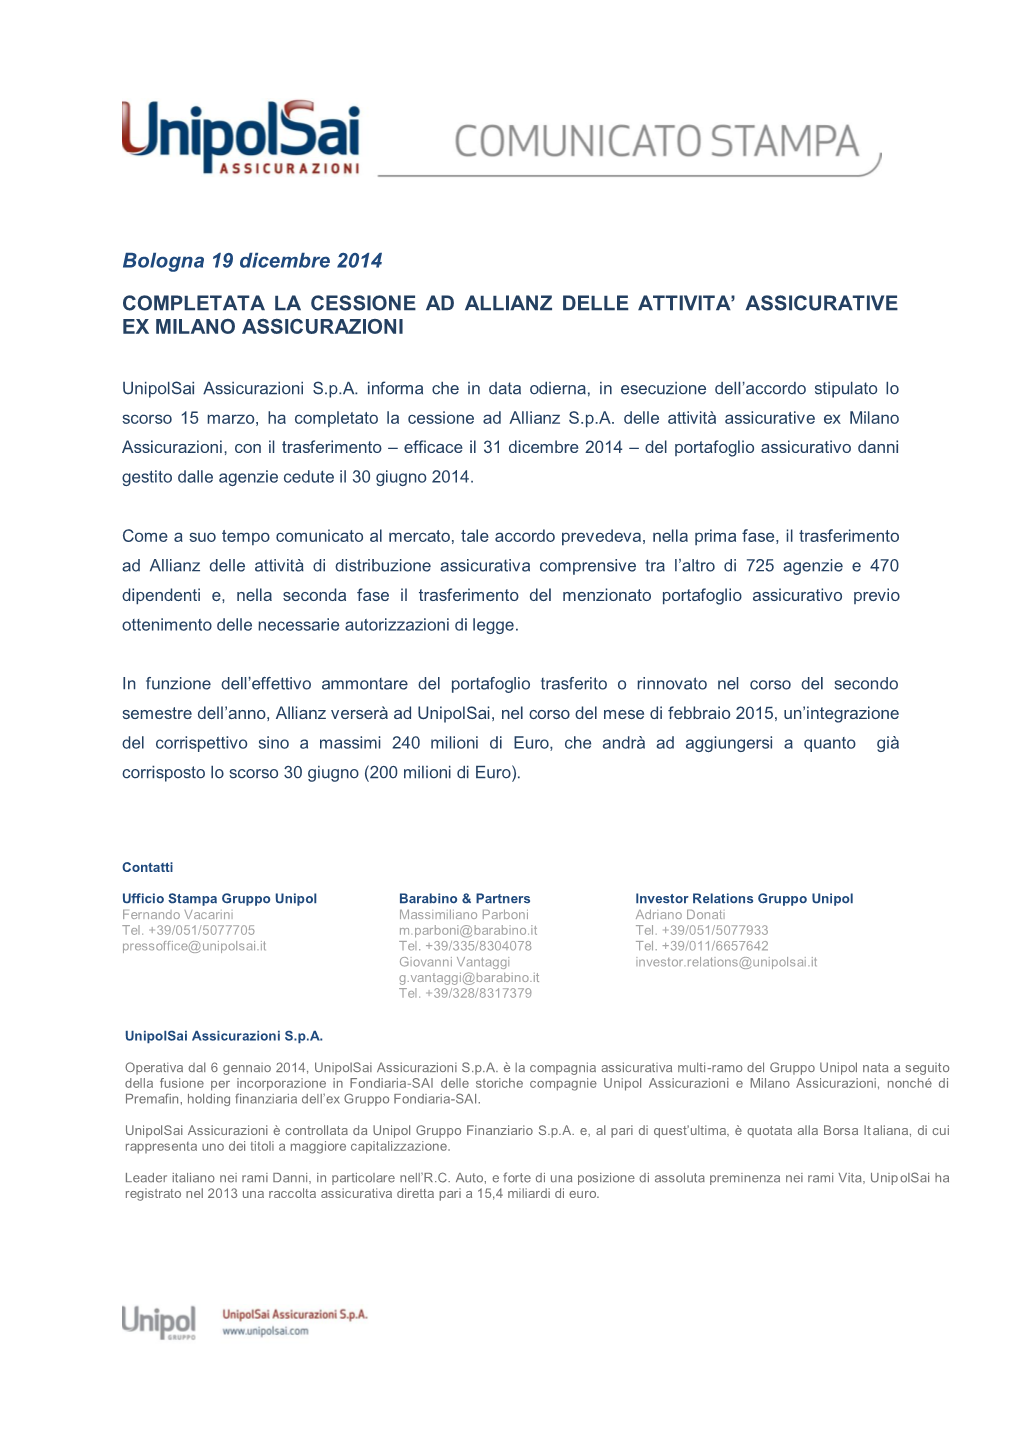 Completata La Cessione Ad Allianz Delle Attivita' Assicurative Ex Milano